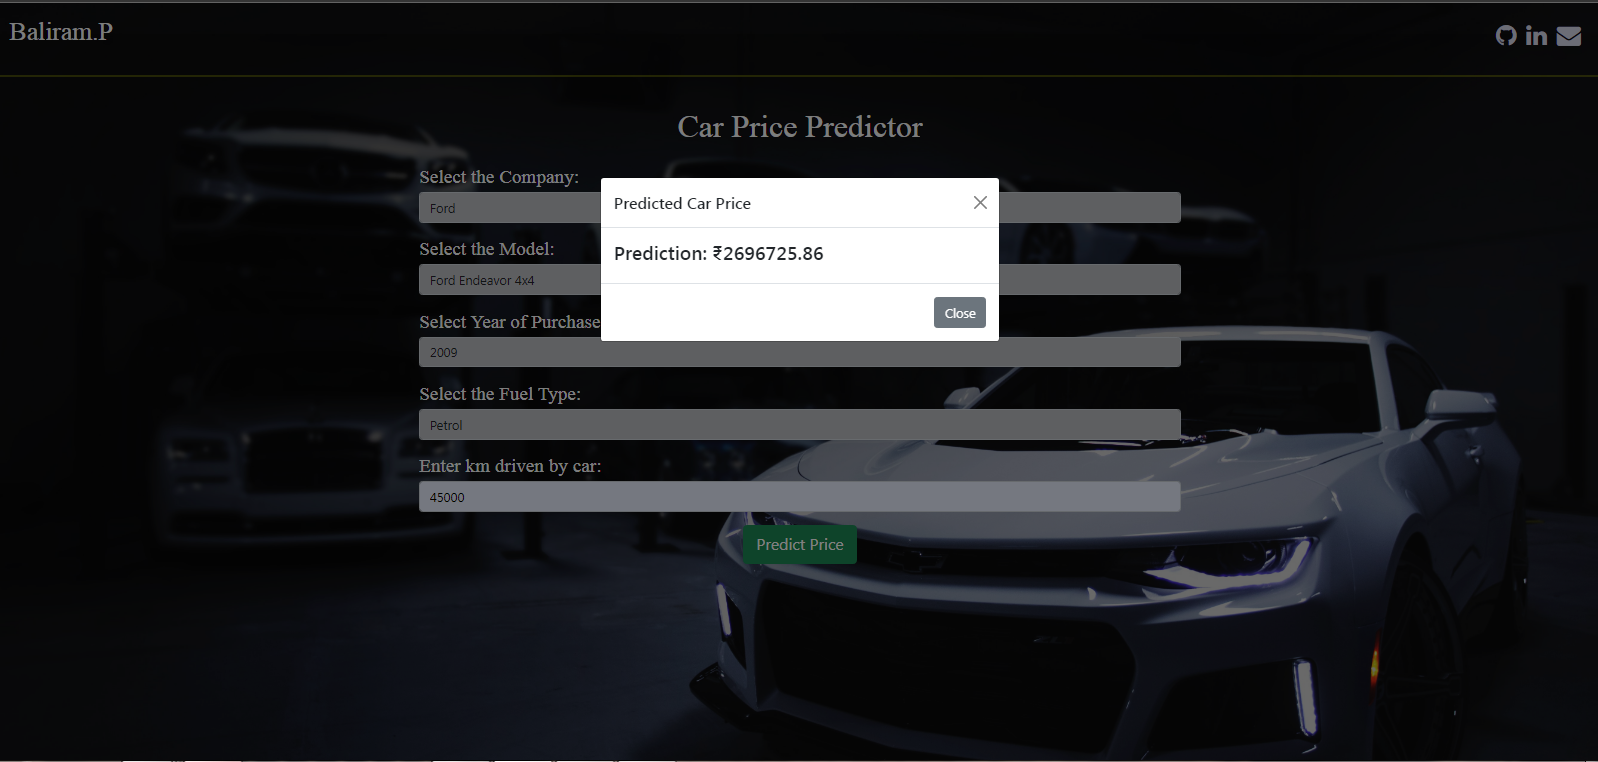 Predicted Car Price